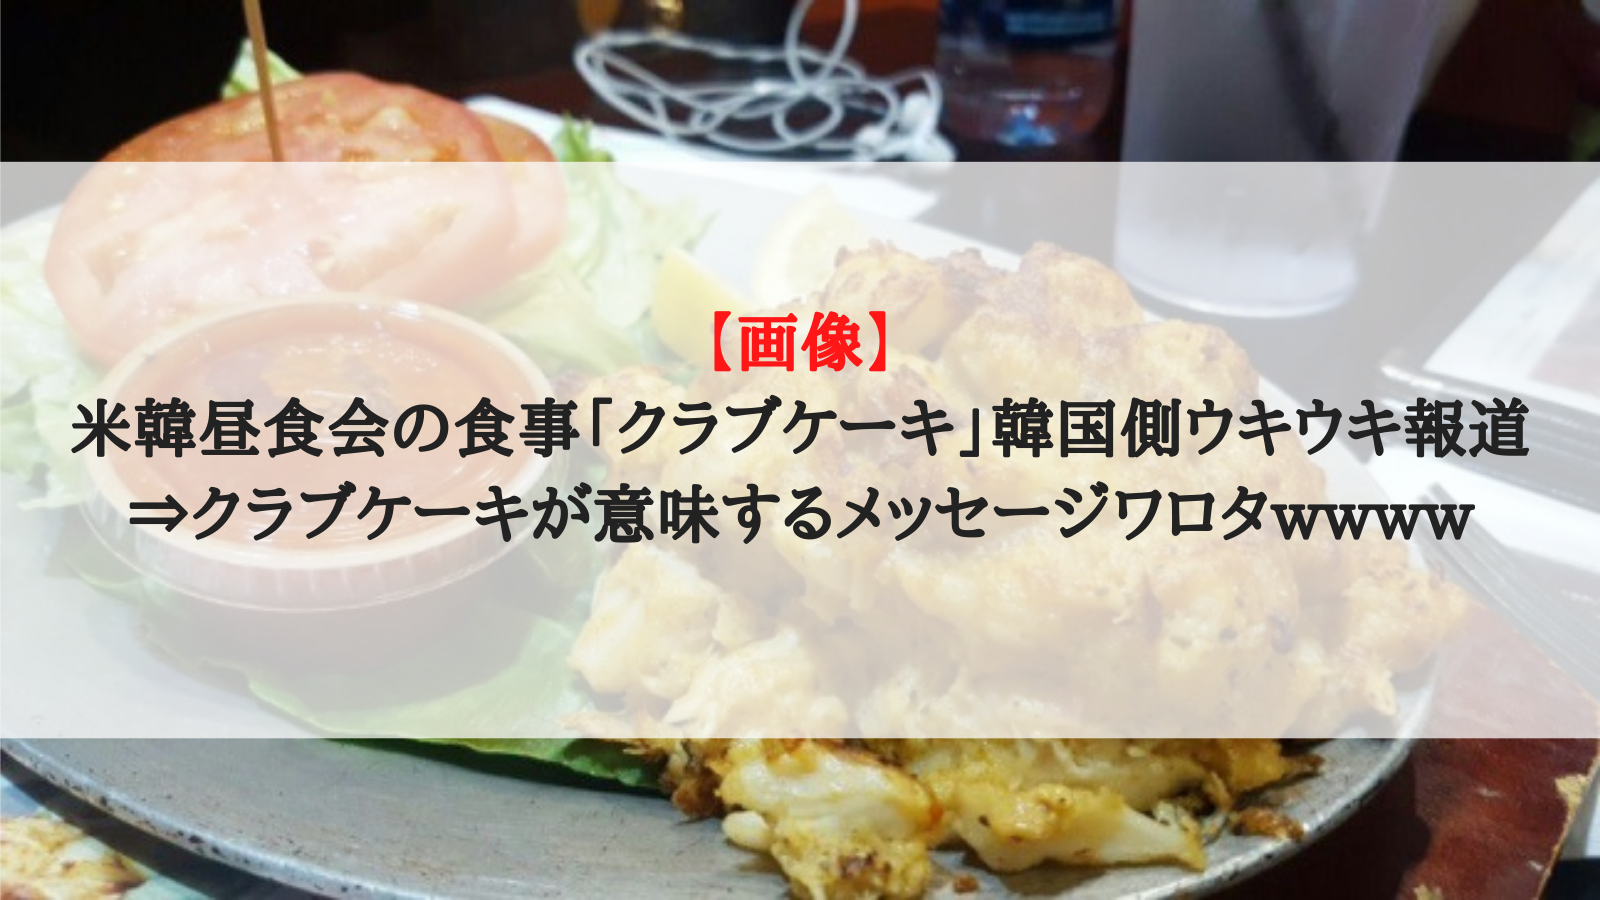 画像 米韓昼食会の食事 クラブケーキ 韓国側ウキウキ報道 クラブケーキが意味するメッセージワロタwwww おーるじゃんる